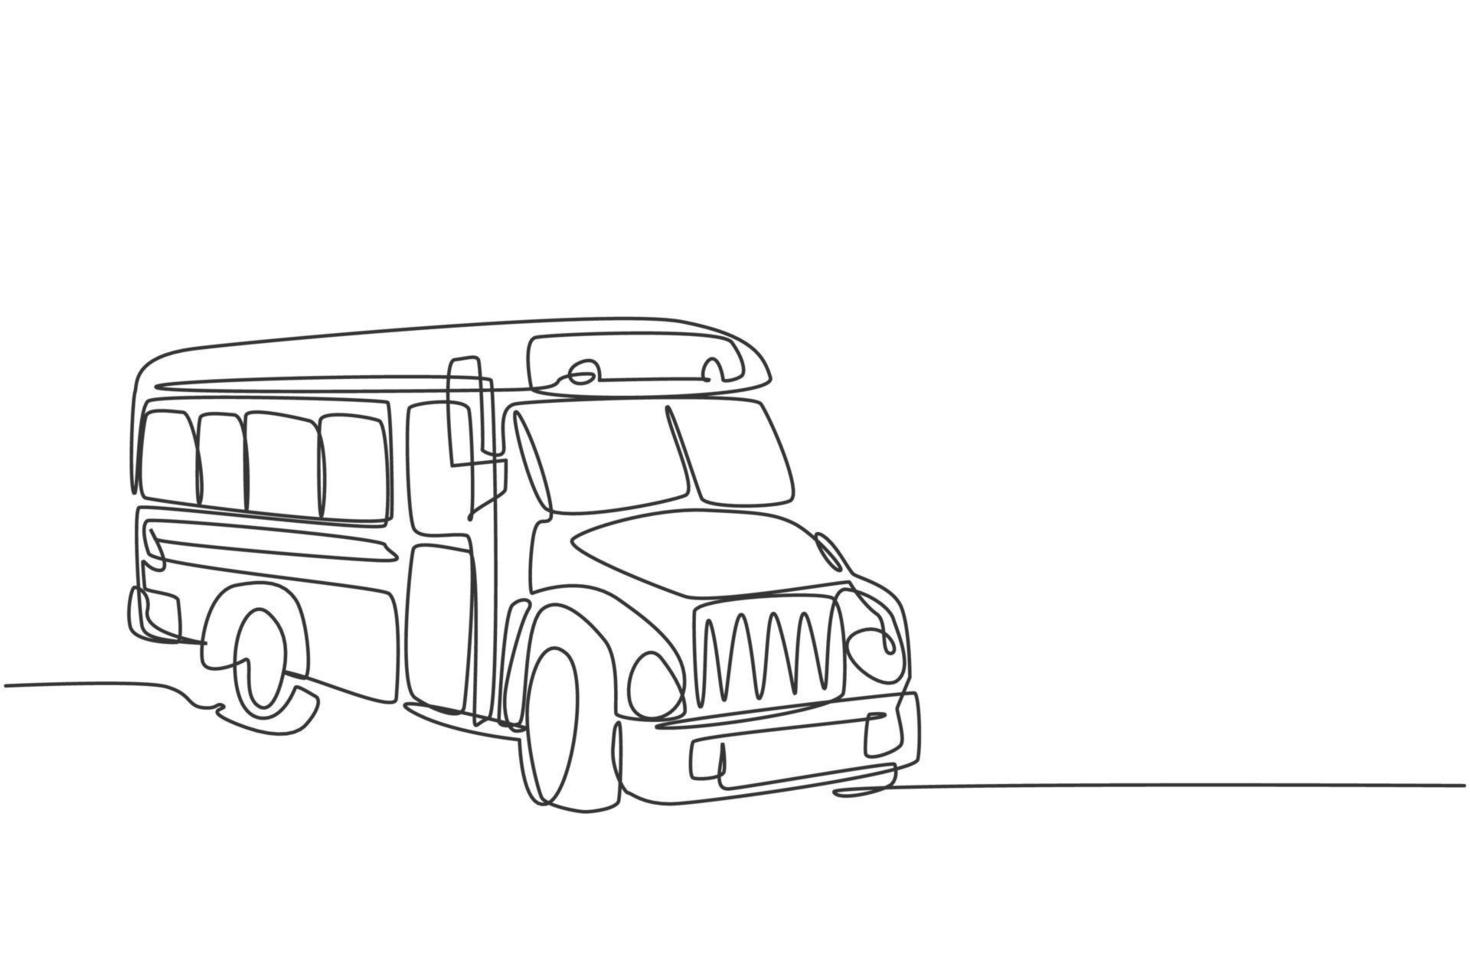 continuo um desenho de linha transporte de ônibus escolar clássico antigo para estudantes americanos. de volta ao conceito de minimalismo desenhado à mão da escola. desenho de desenho de linha única para ilustração de gráfico vetorial de educação vetor